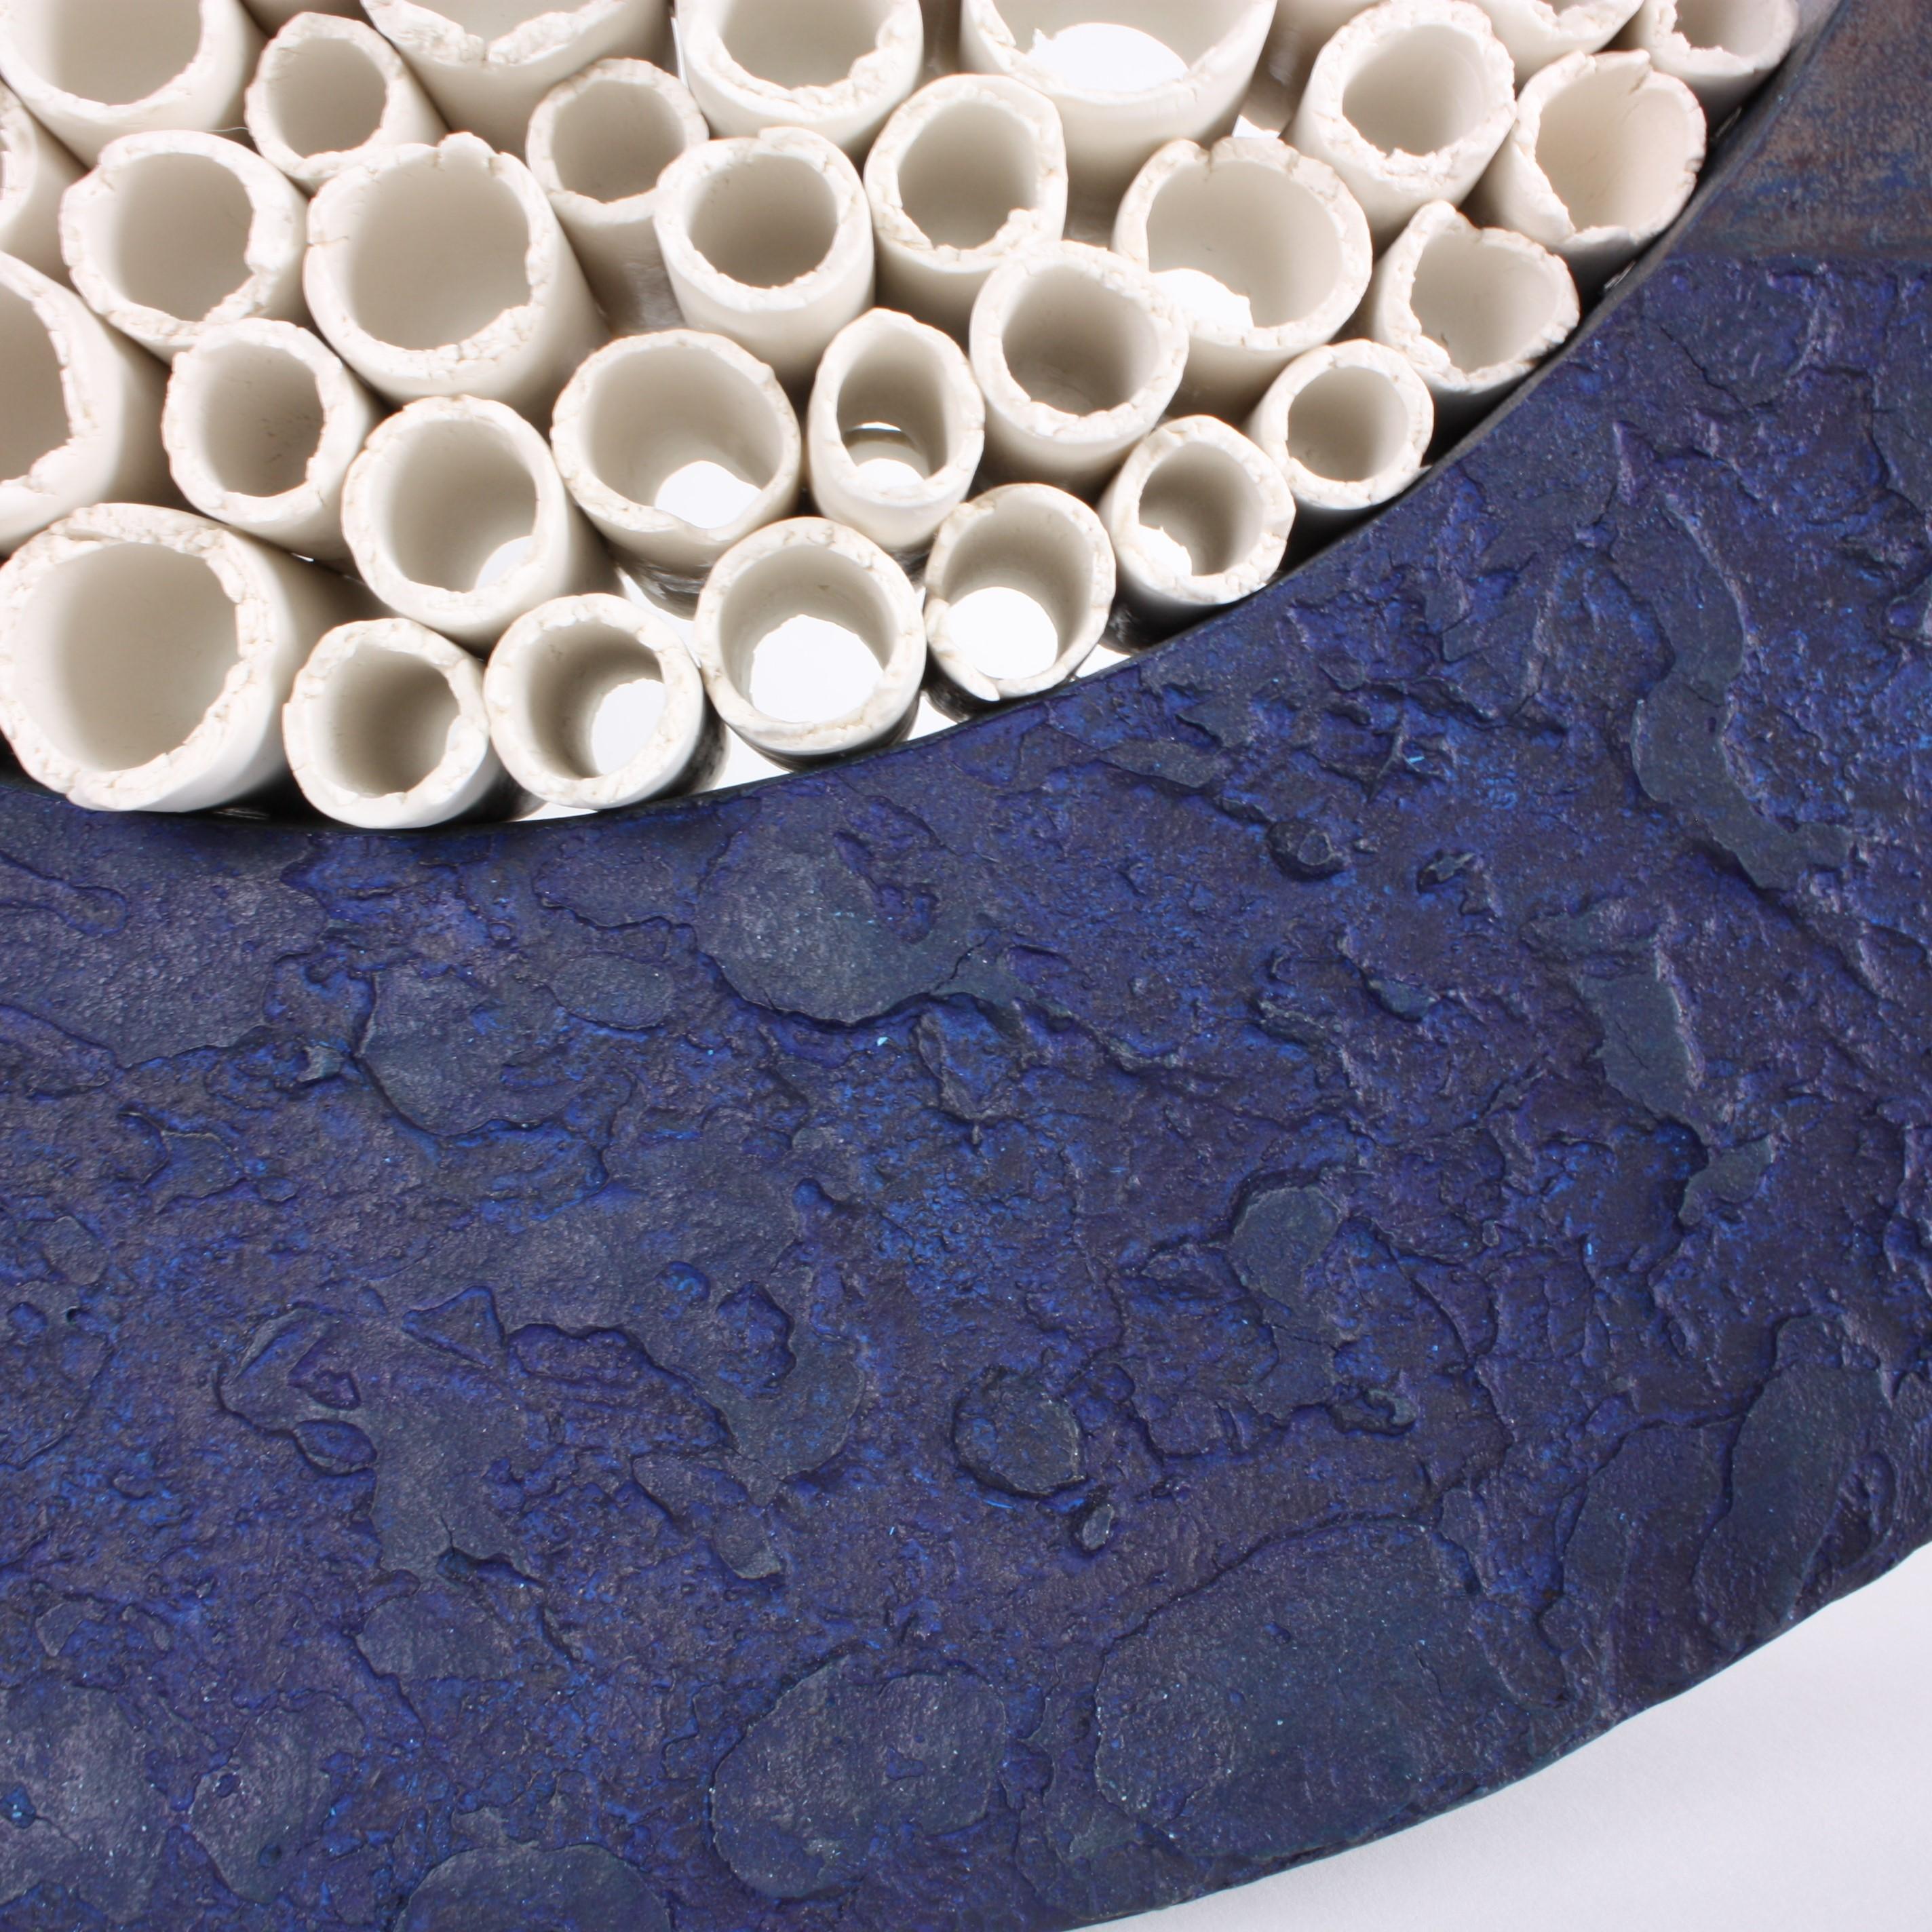 Contemporary Ceramic Sculpture, Grand Anneau Bleu 2